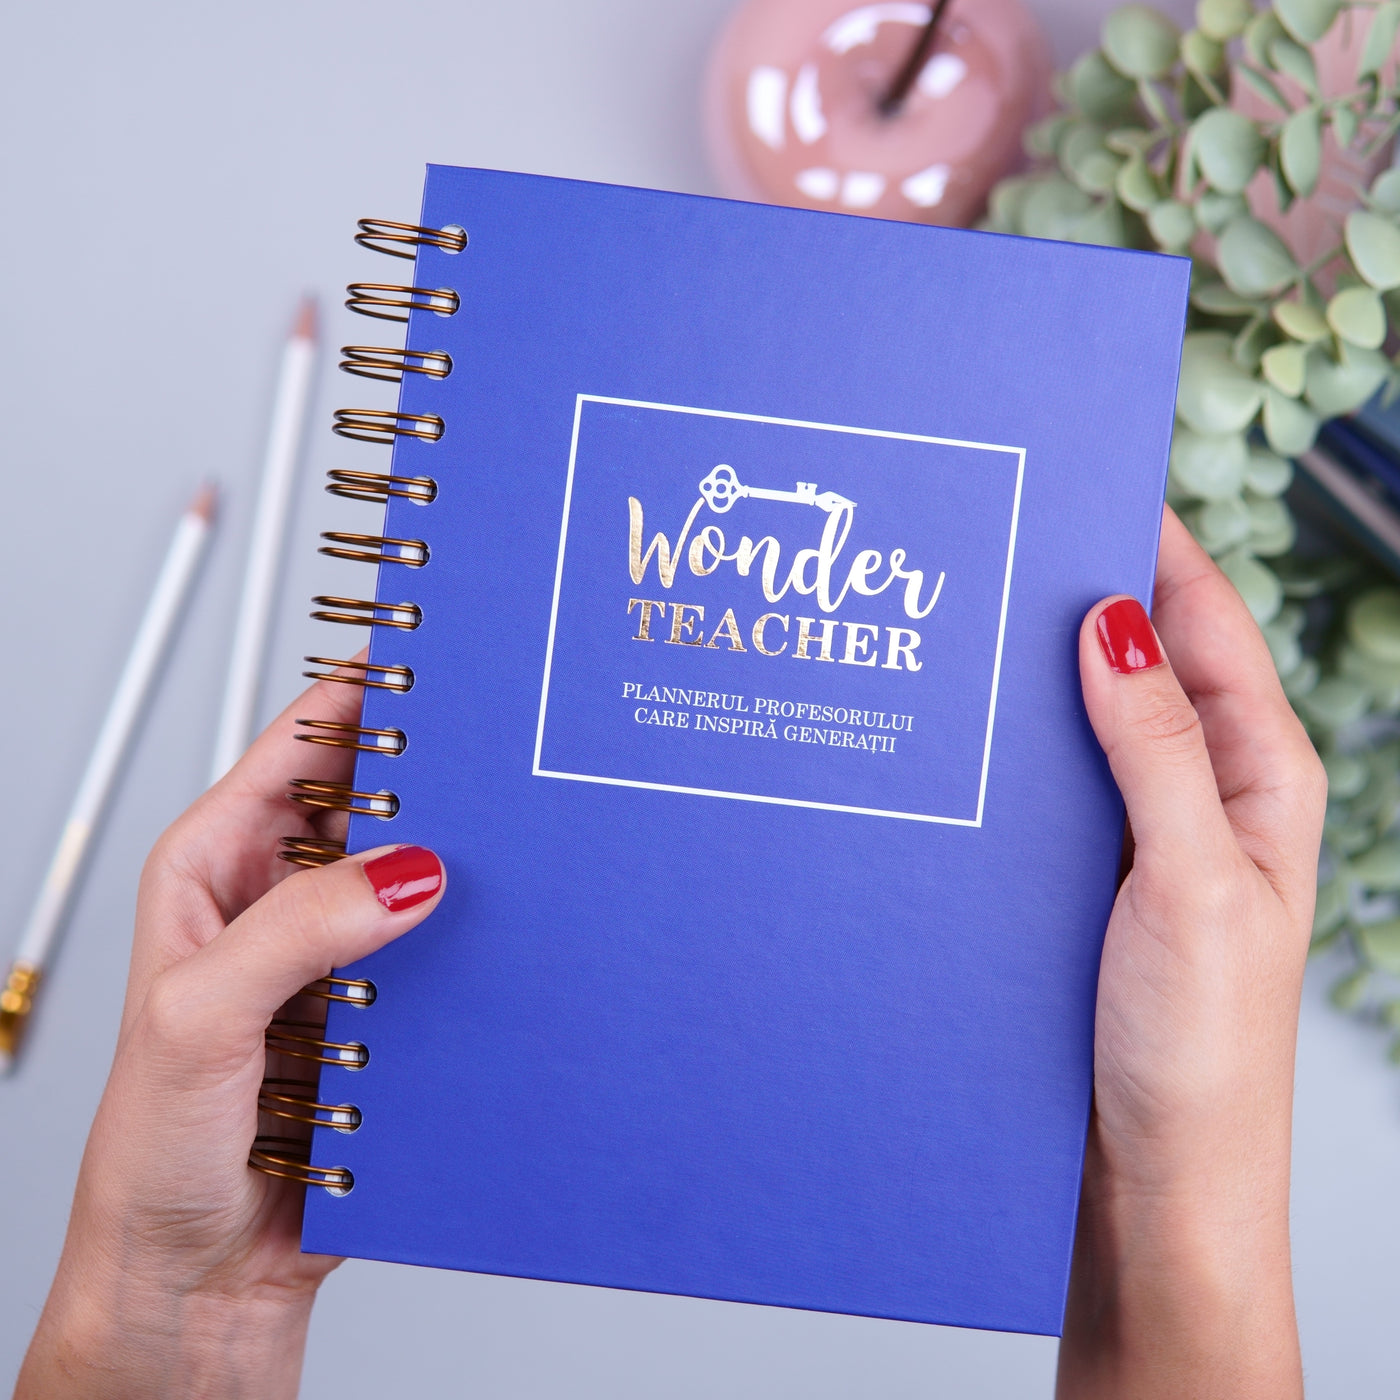 Agenda profesorului care inspira generatii - The Wonder Teacher - cadou pentru profesori